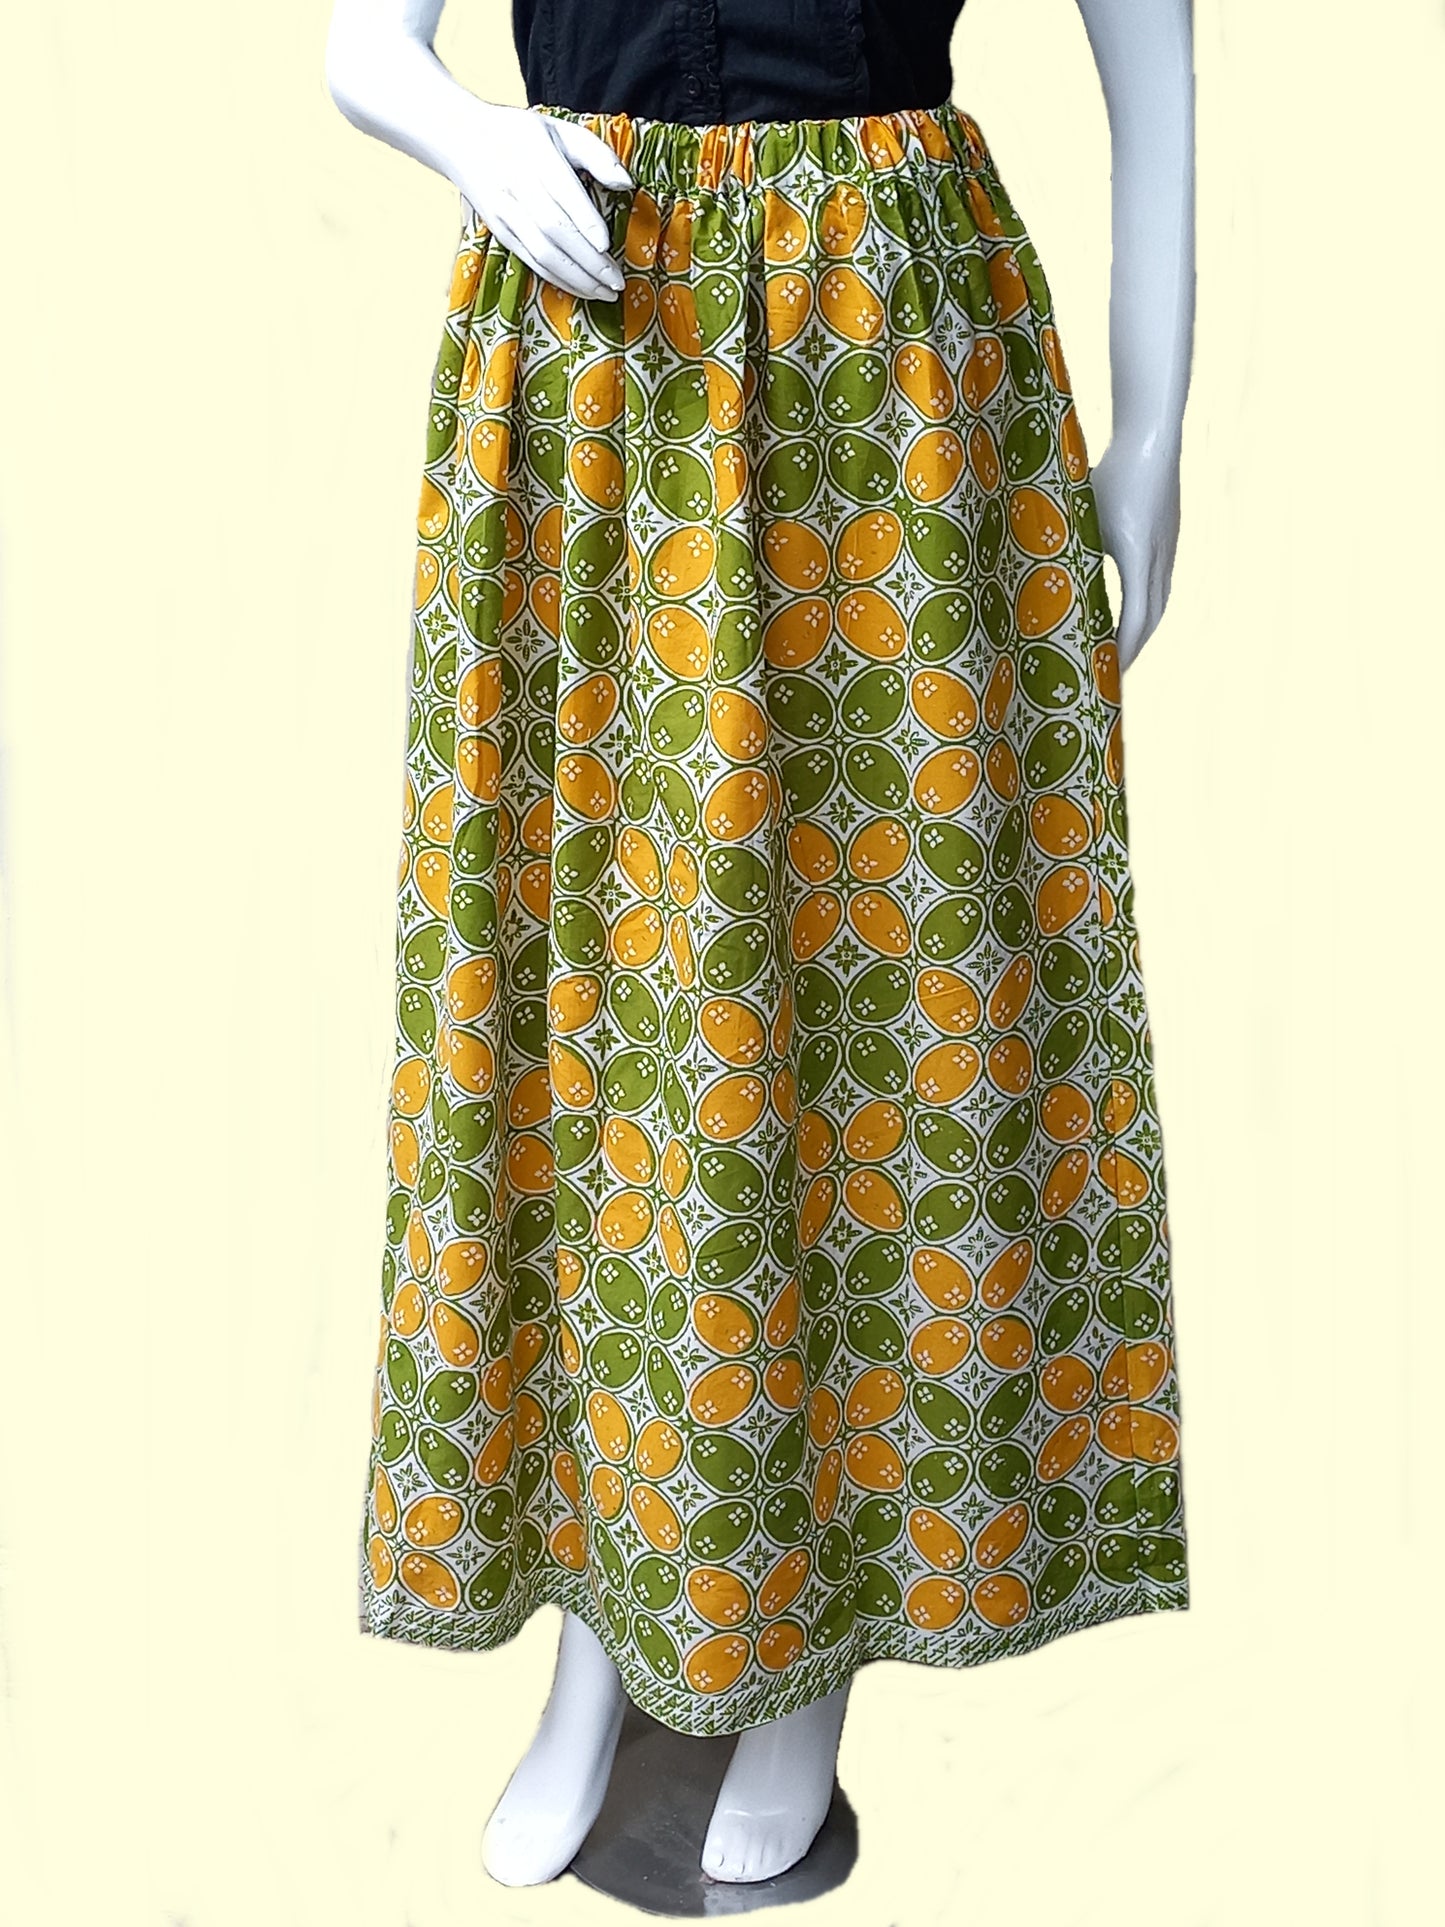 Indonesian batik Skirt, Summer skirt, green maxi skirt, holiday skirt